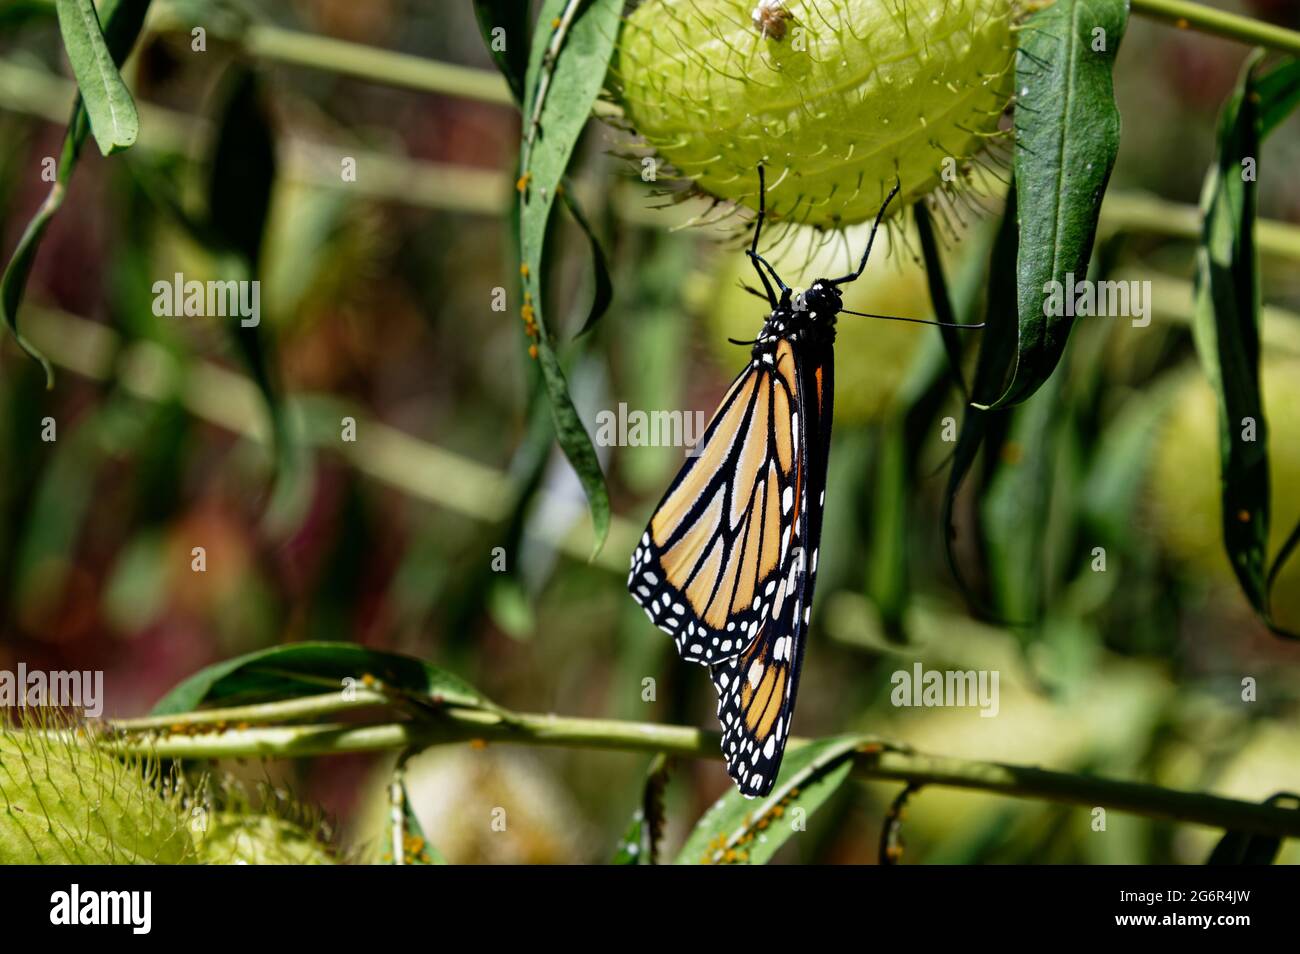 Ein Monarchschmetterling hängt kopfüber auf der Samenschote einer Milchkrautpflanze Stockfoto